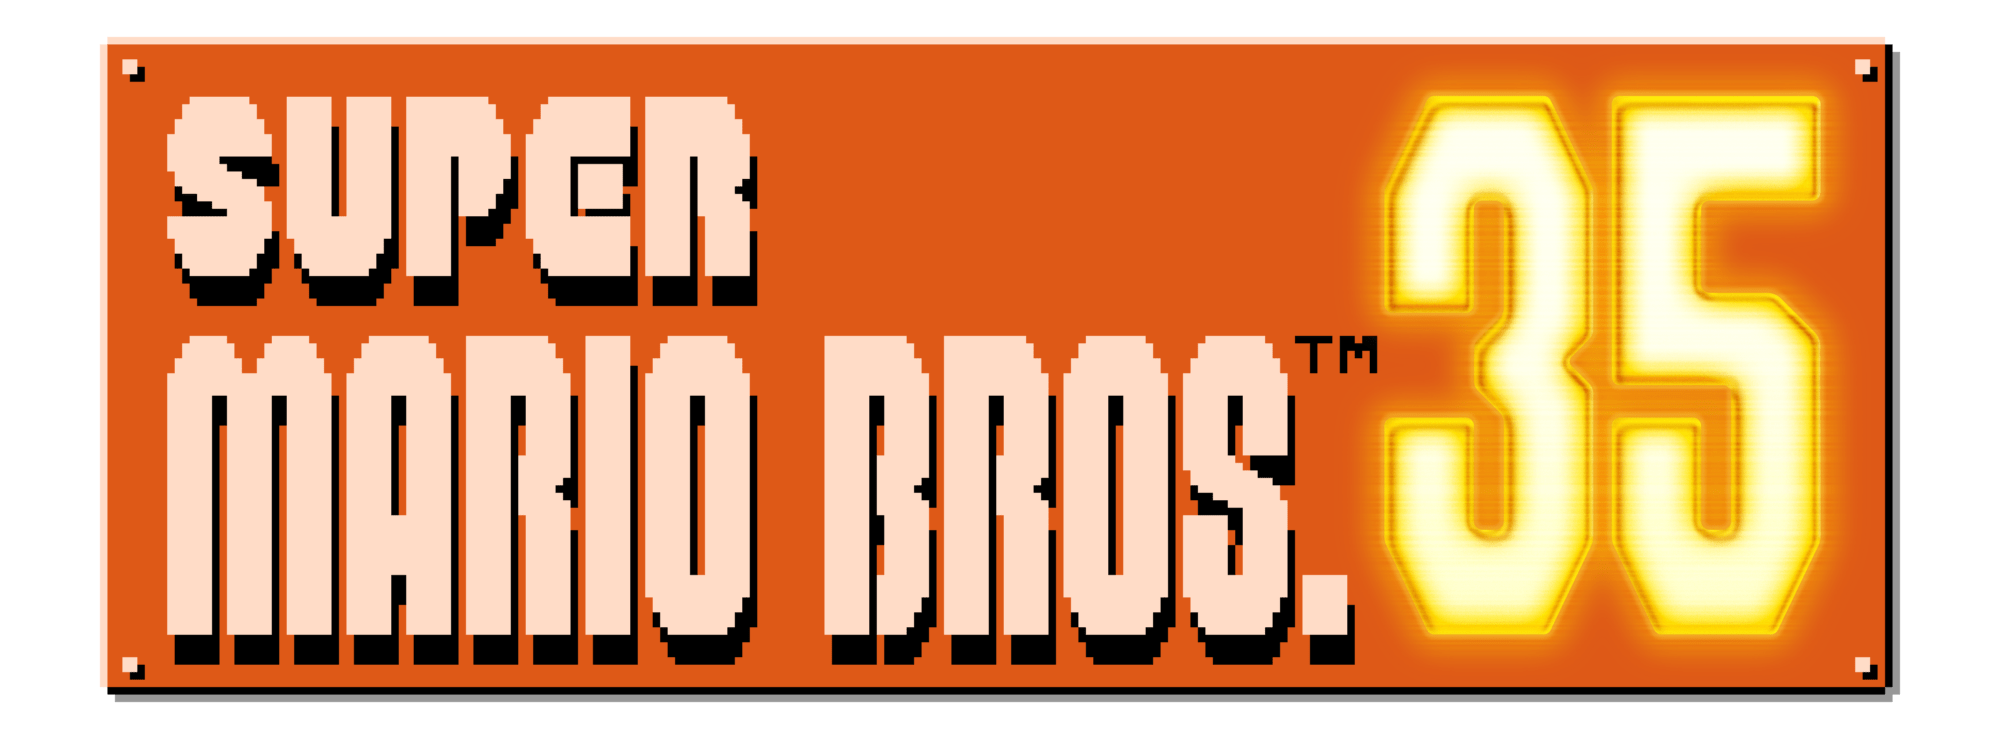 Super Mario Bros 35 – Nintendo’s Battle Royale Alternative